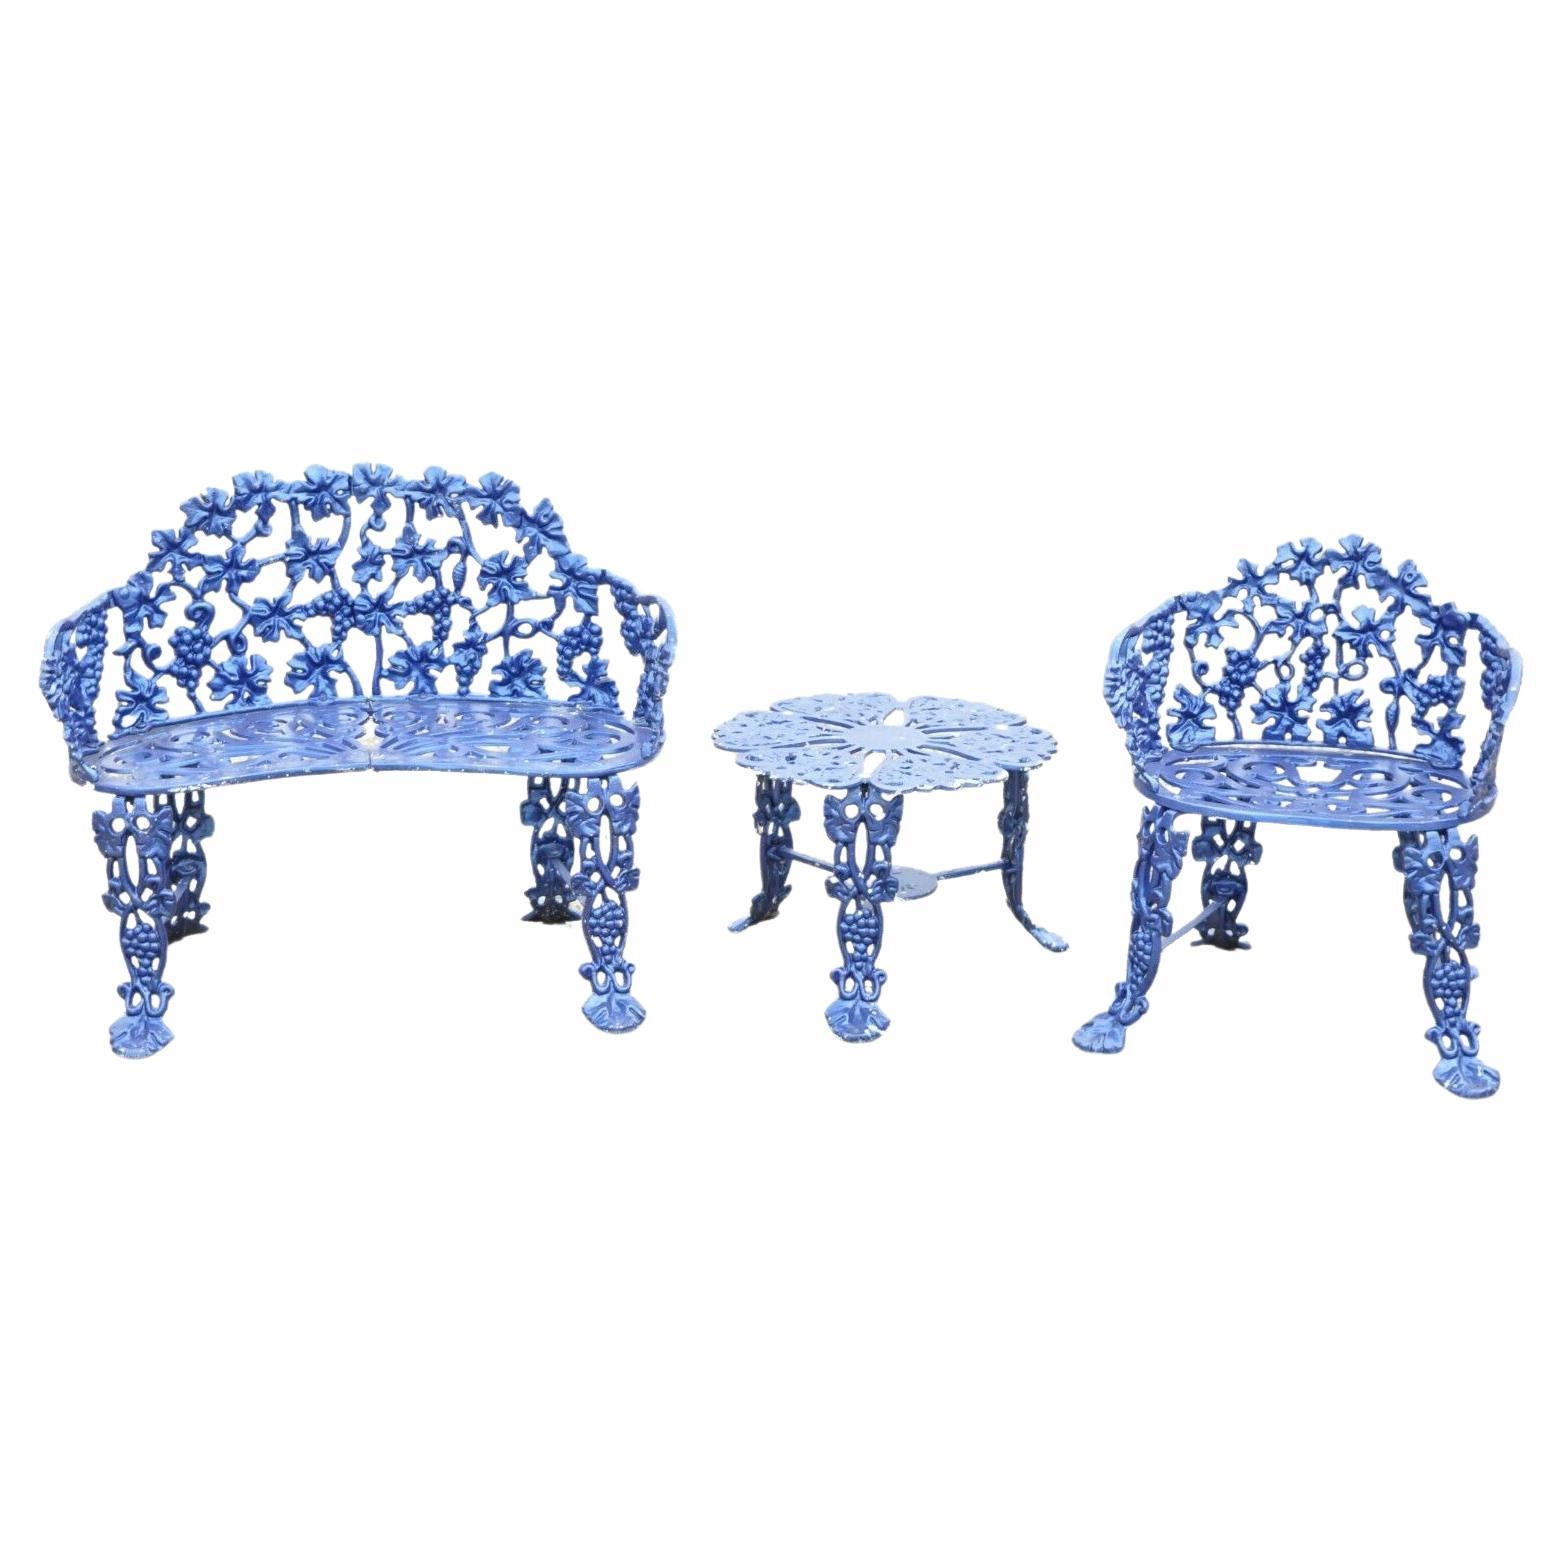 Cast Aluminum Blue Grapevine Garden Set Loveseat Chairs Table, 3 Pc Set